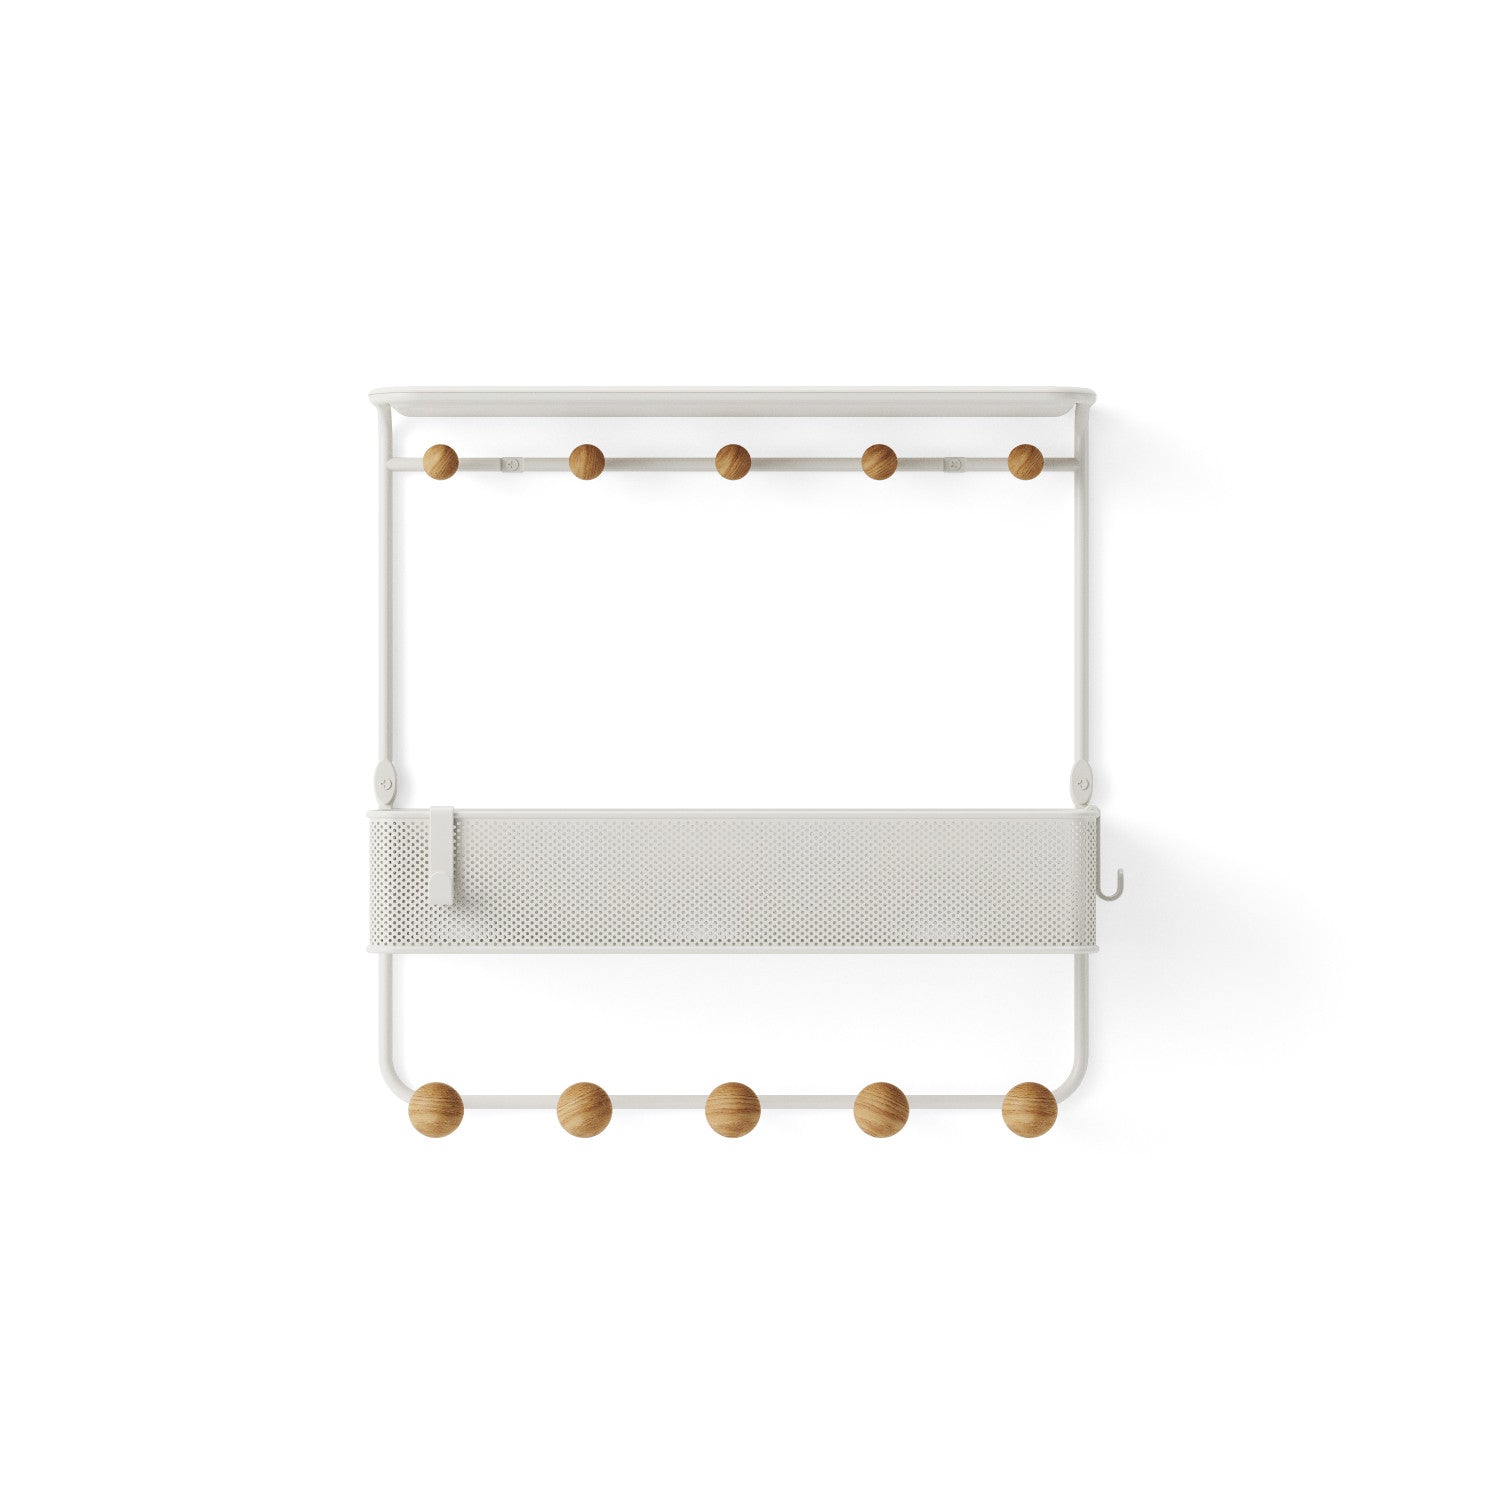 Umbra Estique Shelf with Hooks